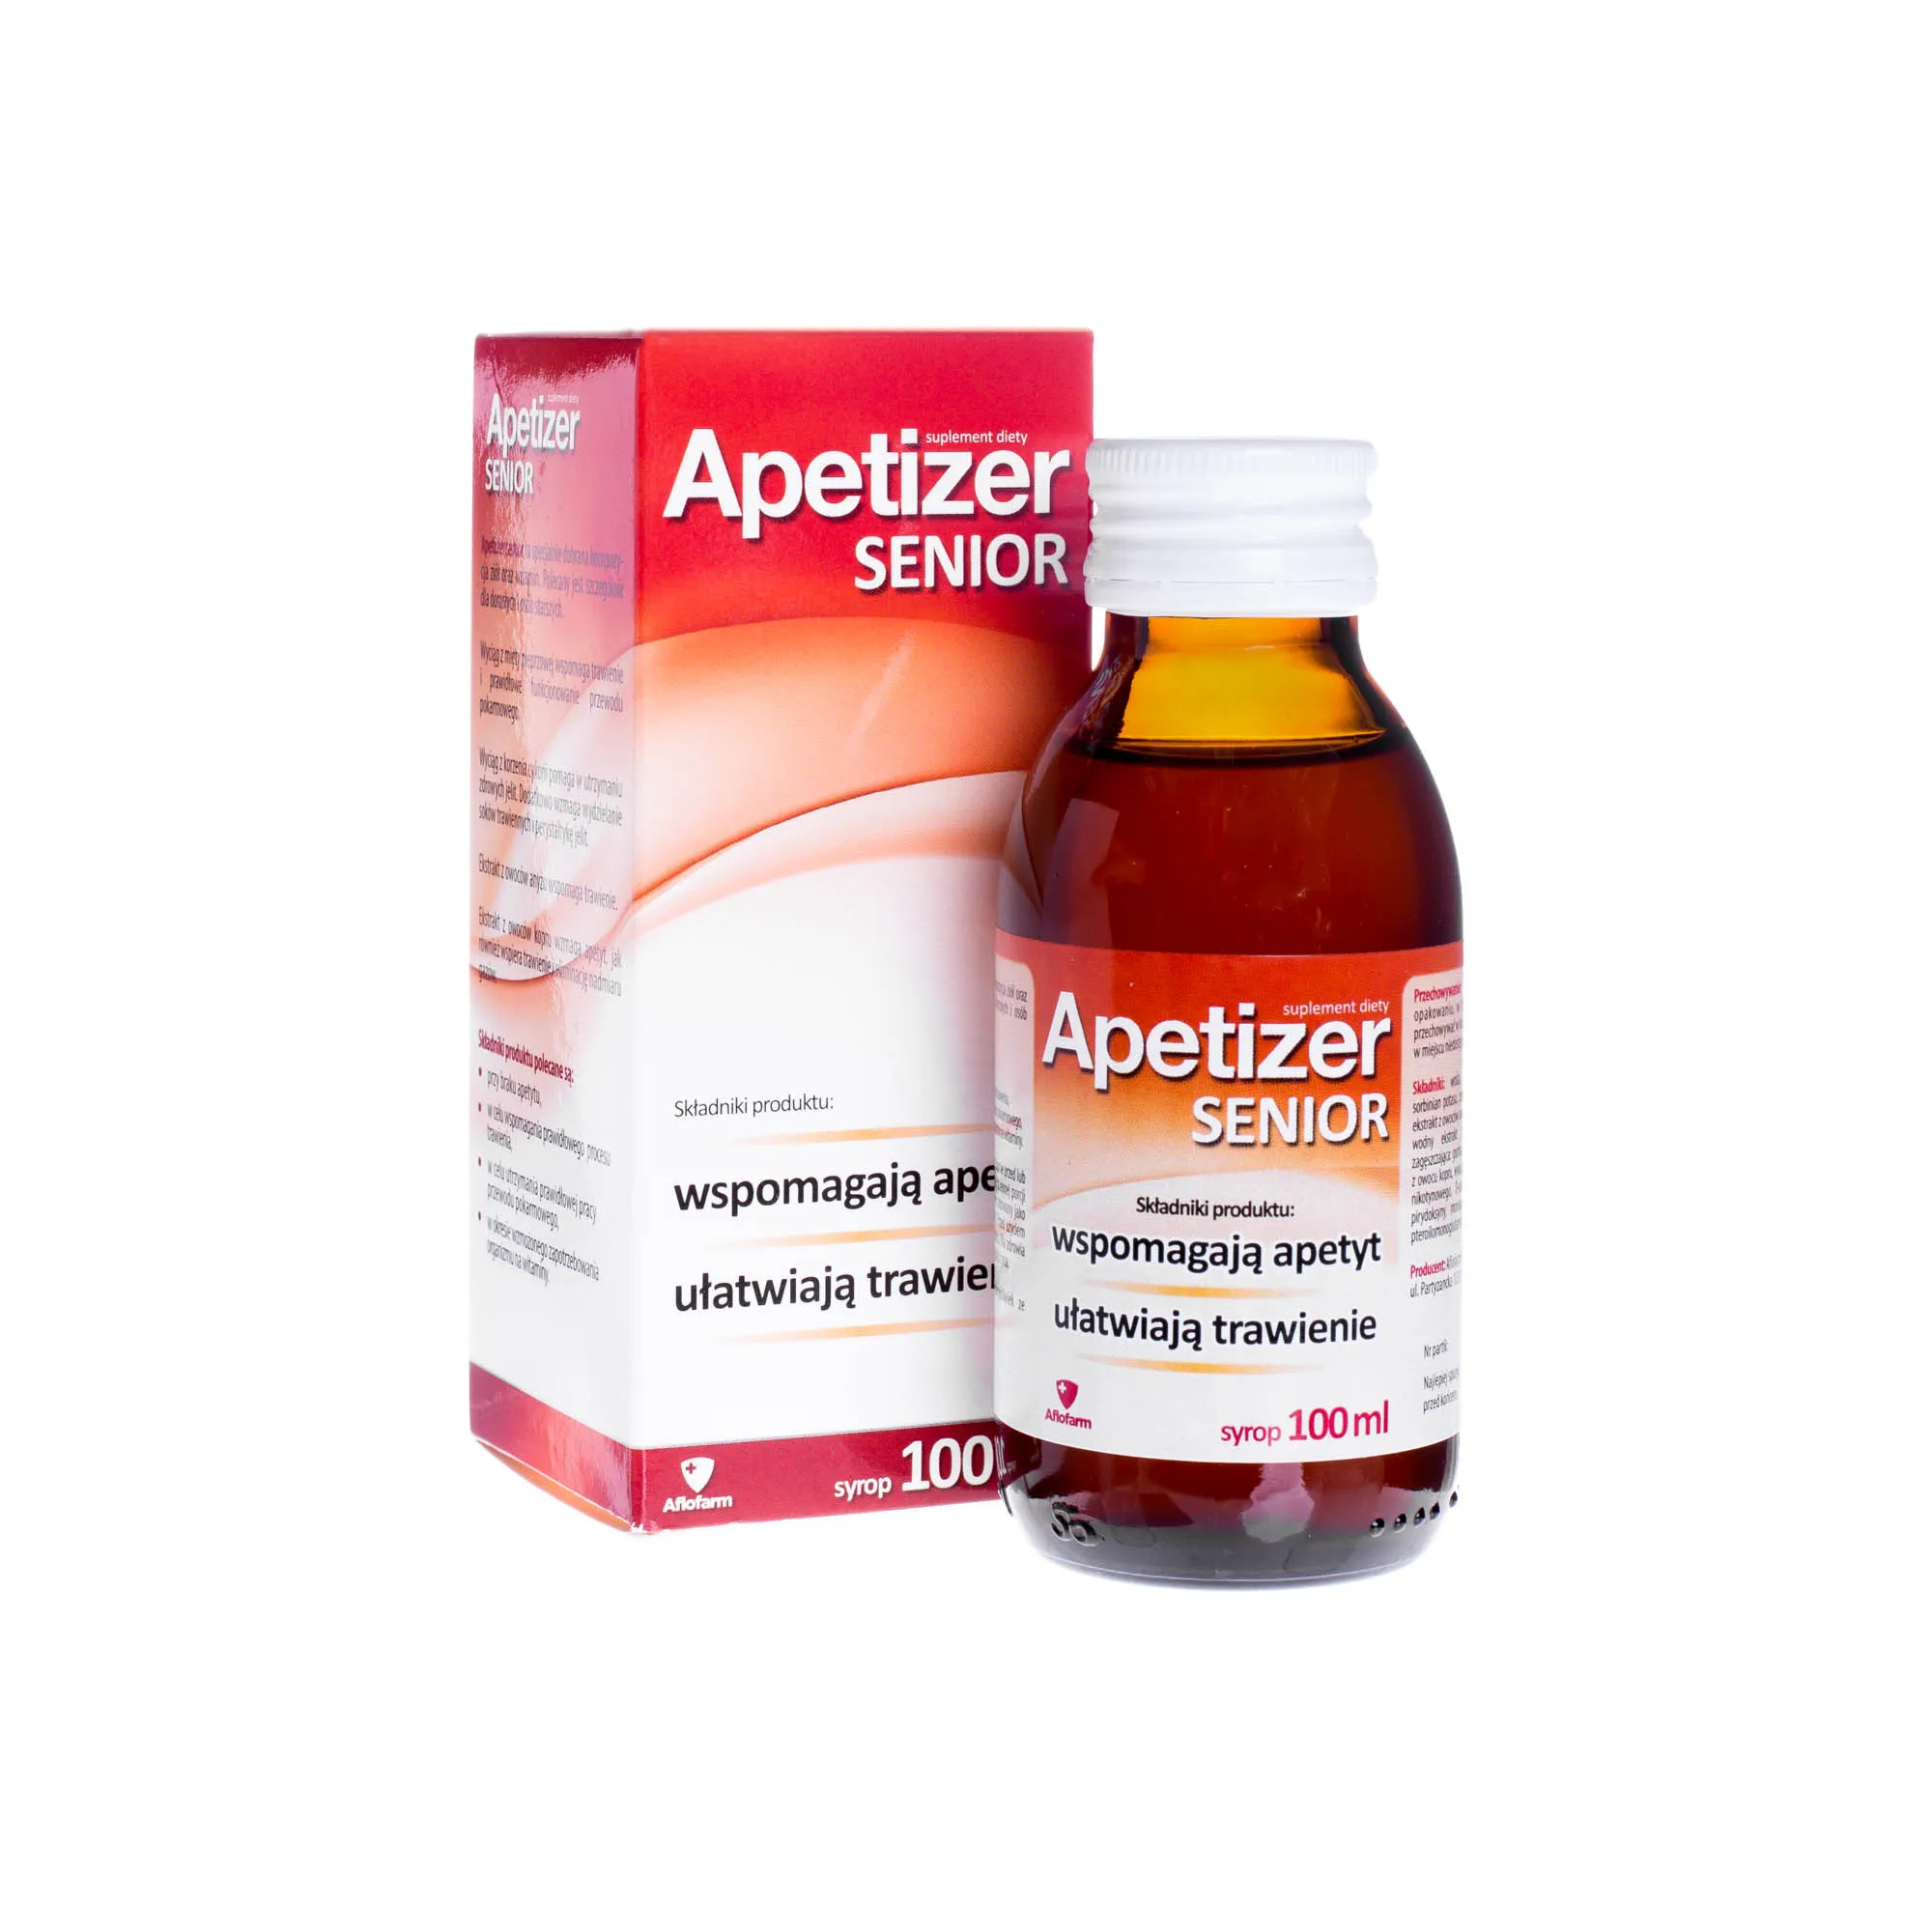 Apetizer Senior, suplement diety, 100 ml 